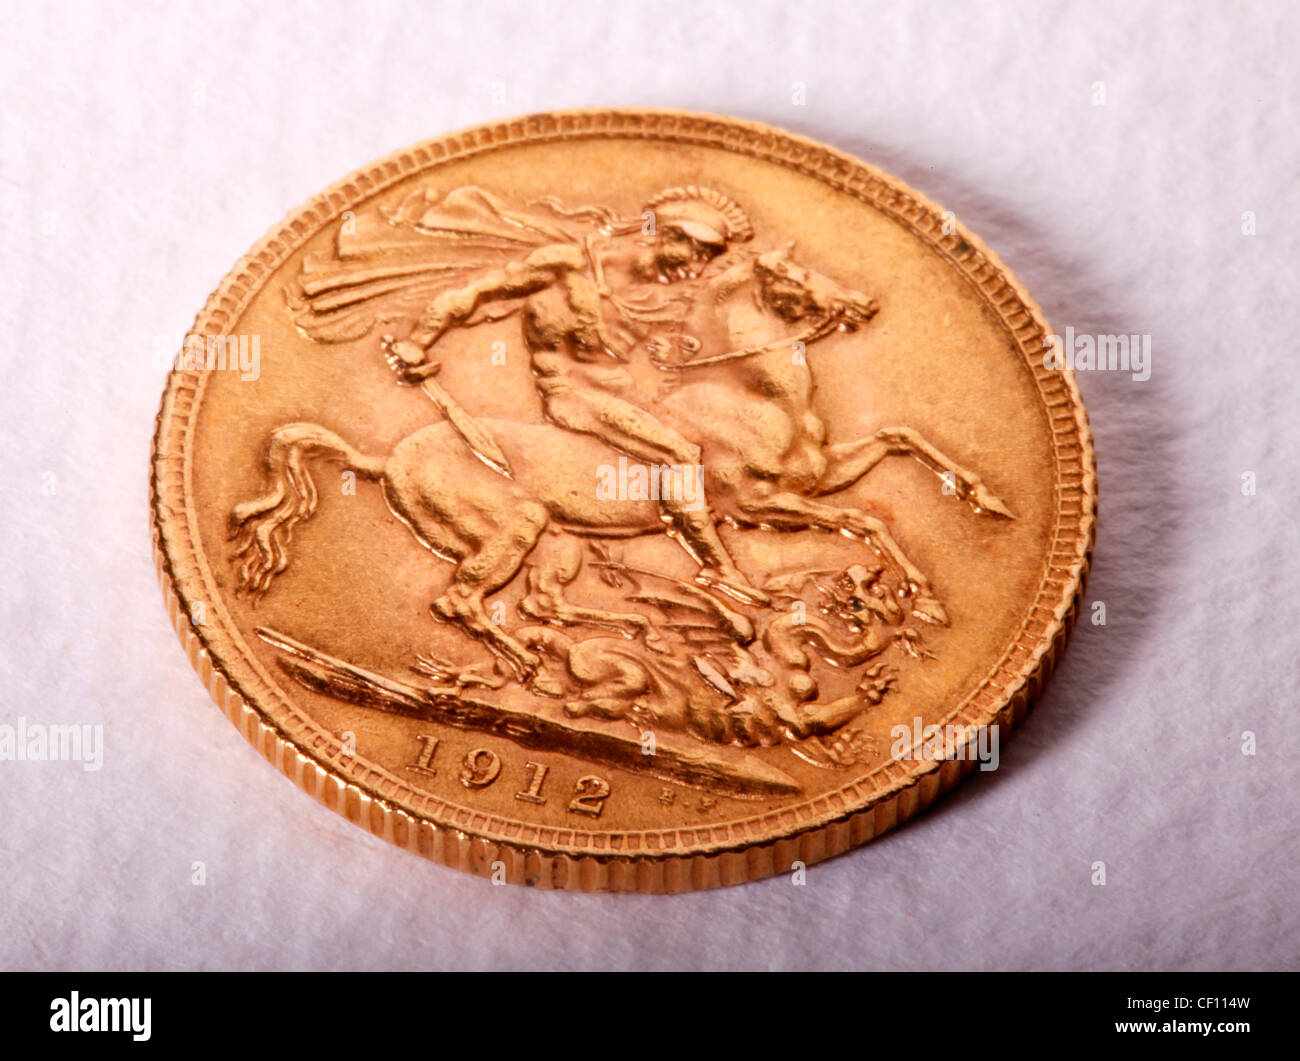 GOLD SOVEREIGN COIN Stock Photo